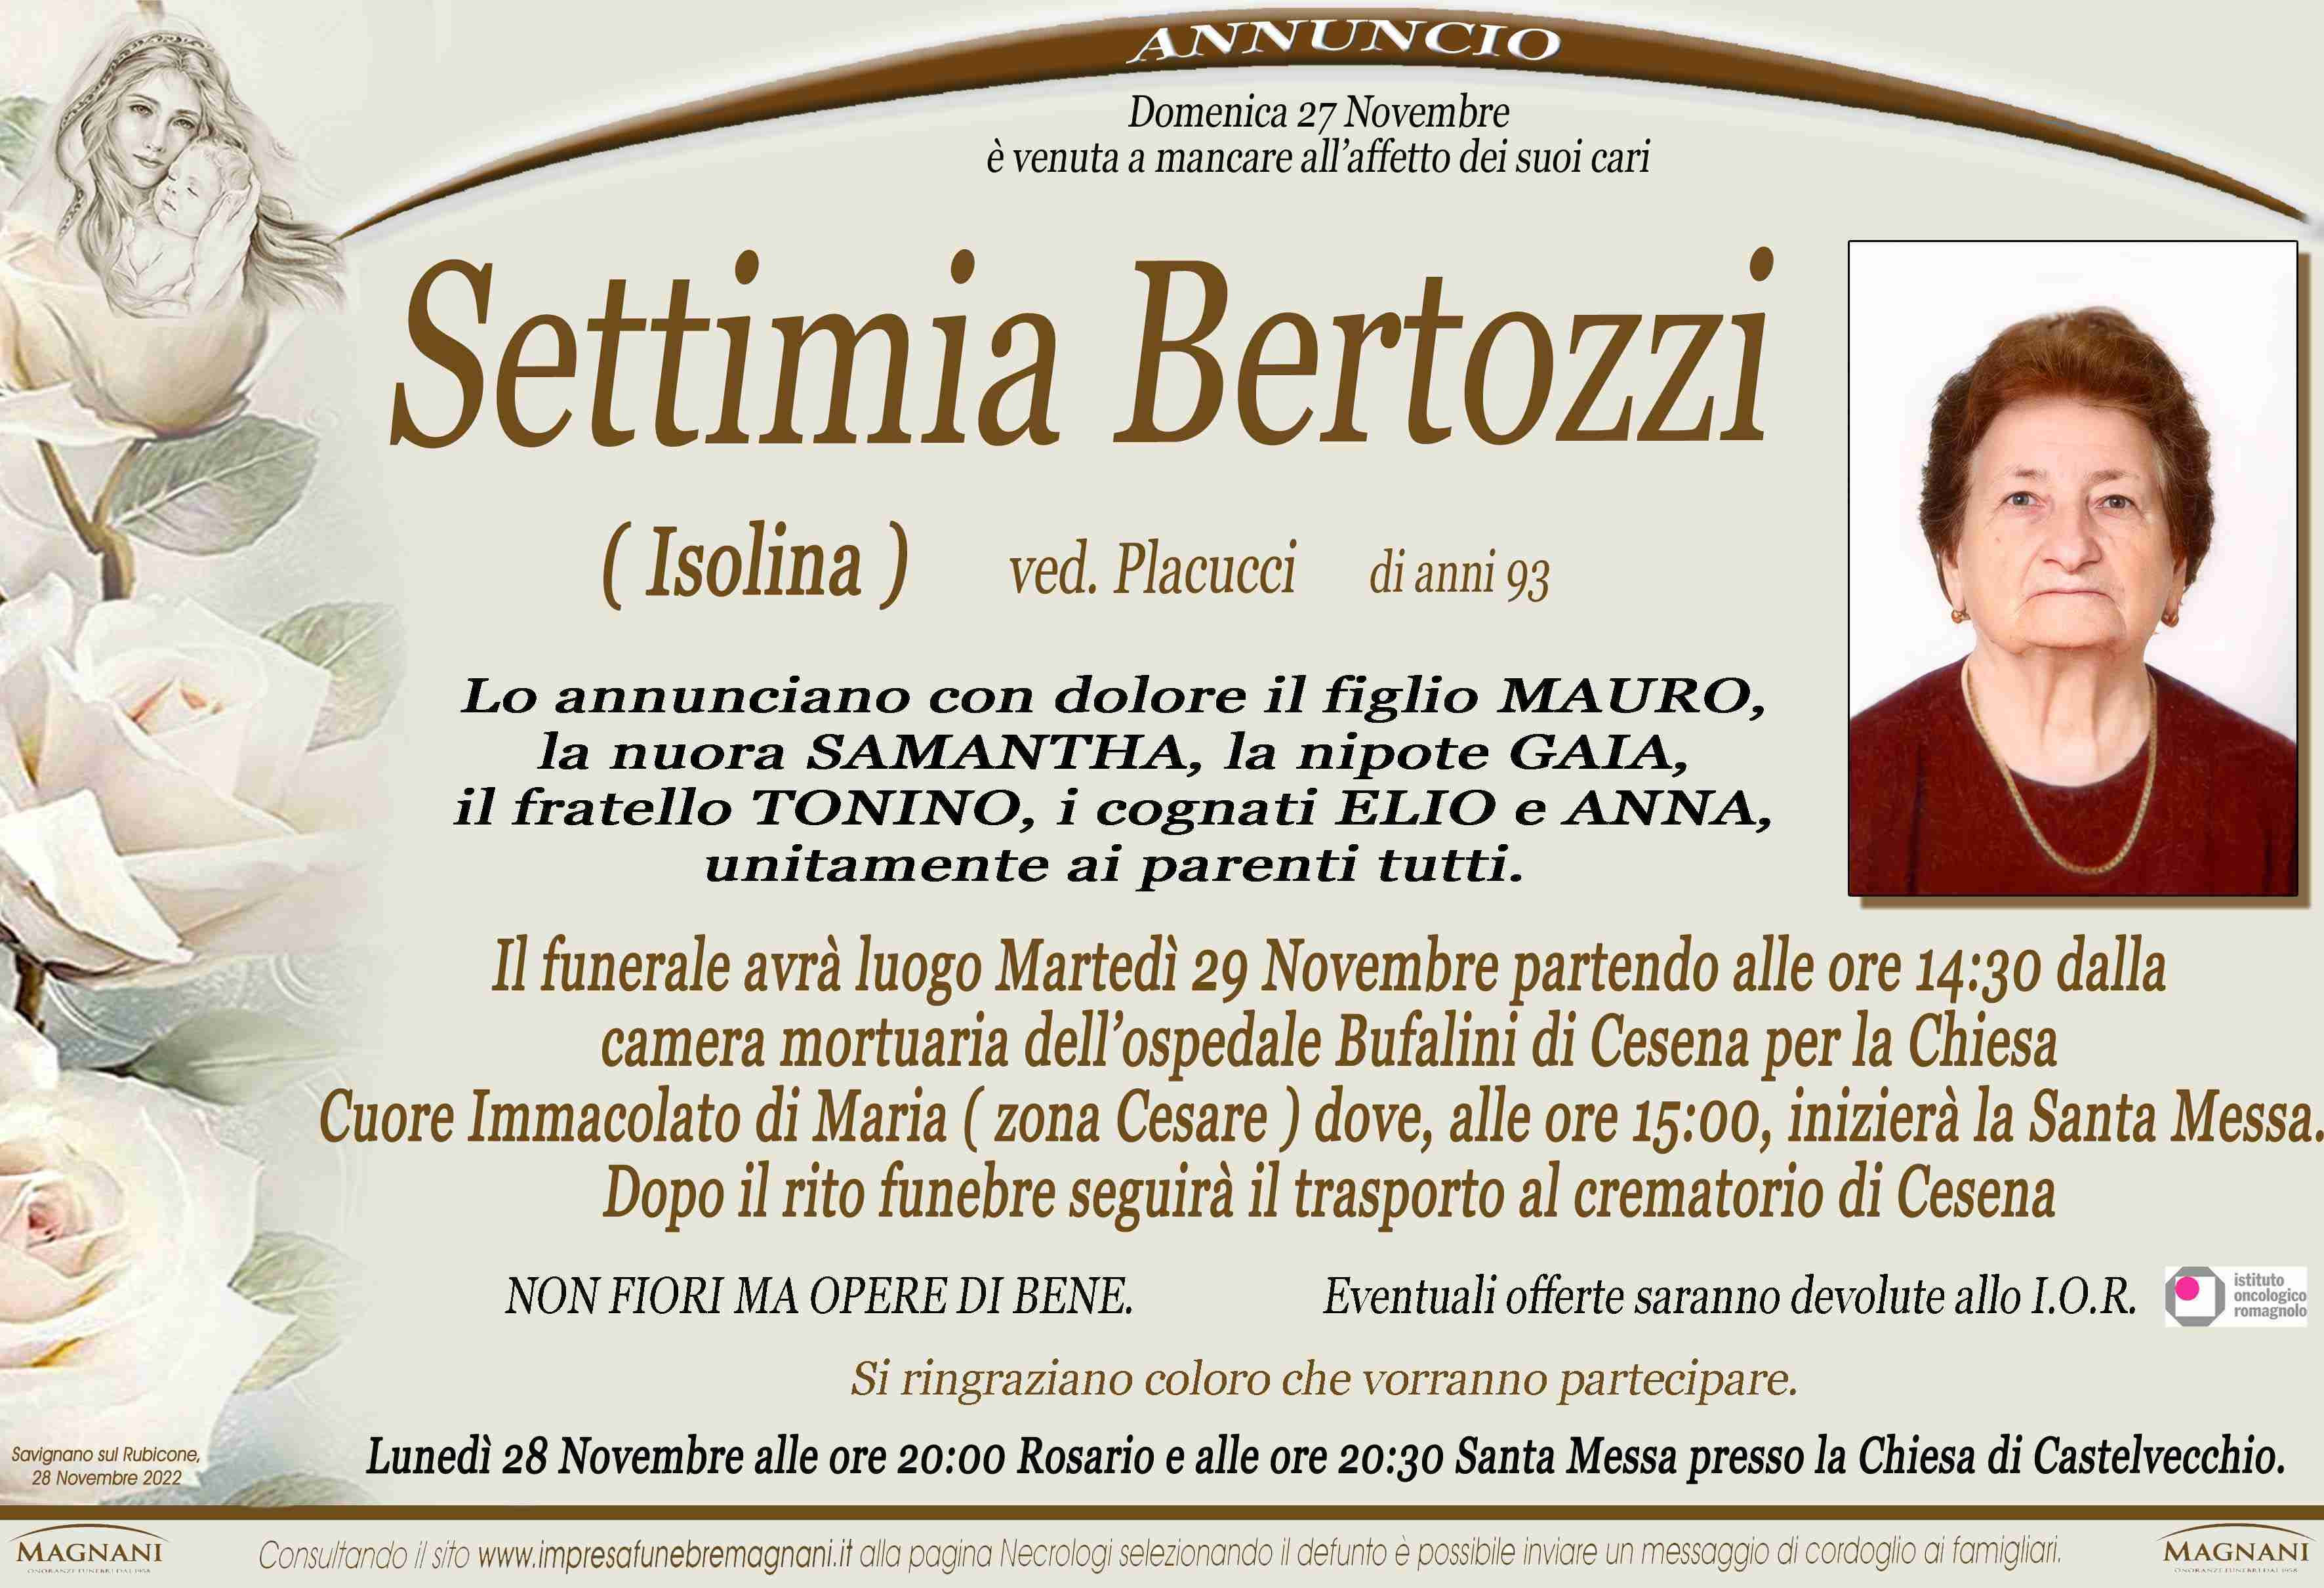 Settimia Bertozzi